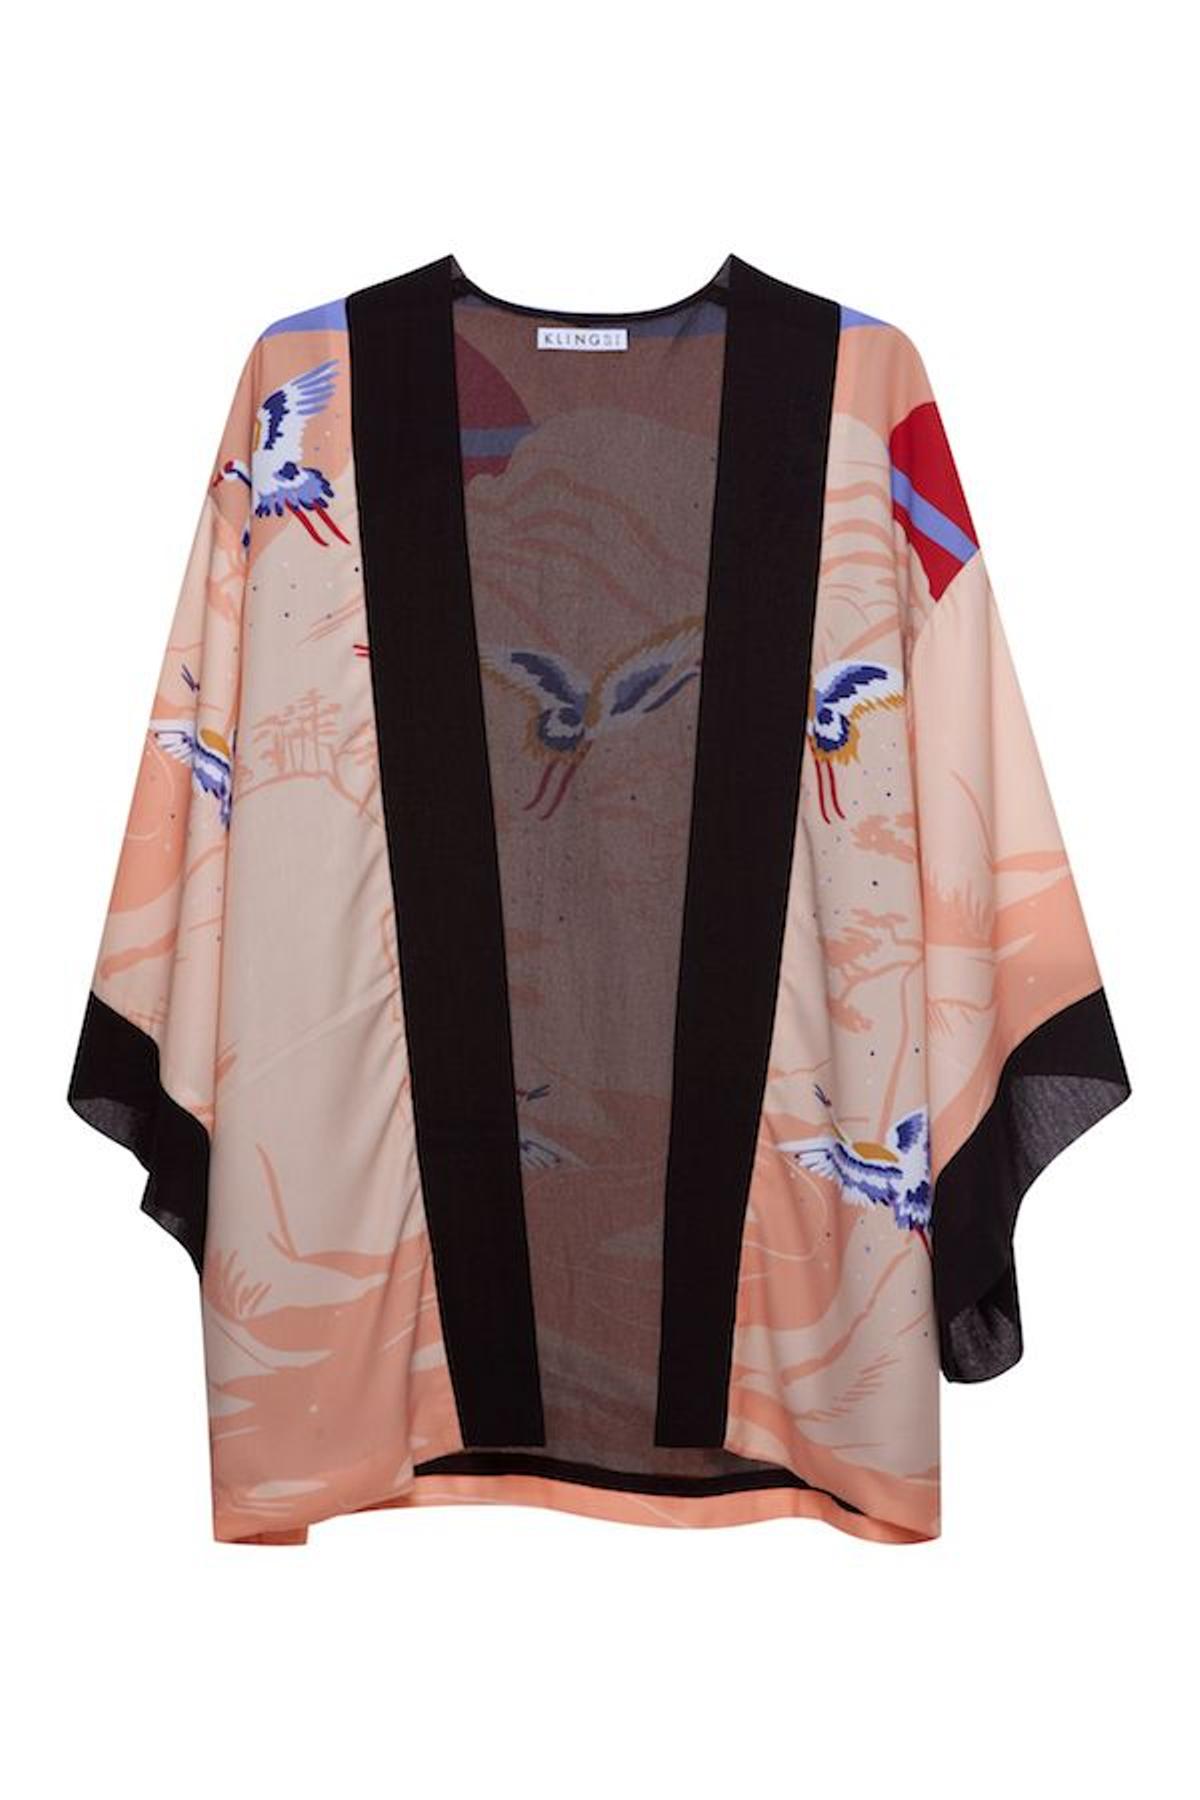 Kimono estampado, de Kling, 40 euros